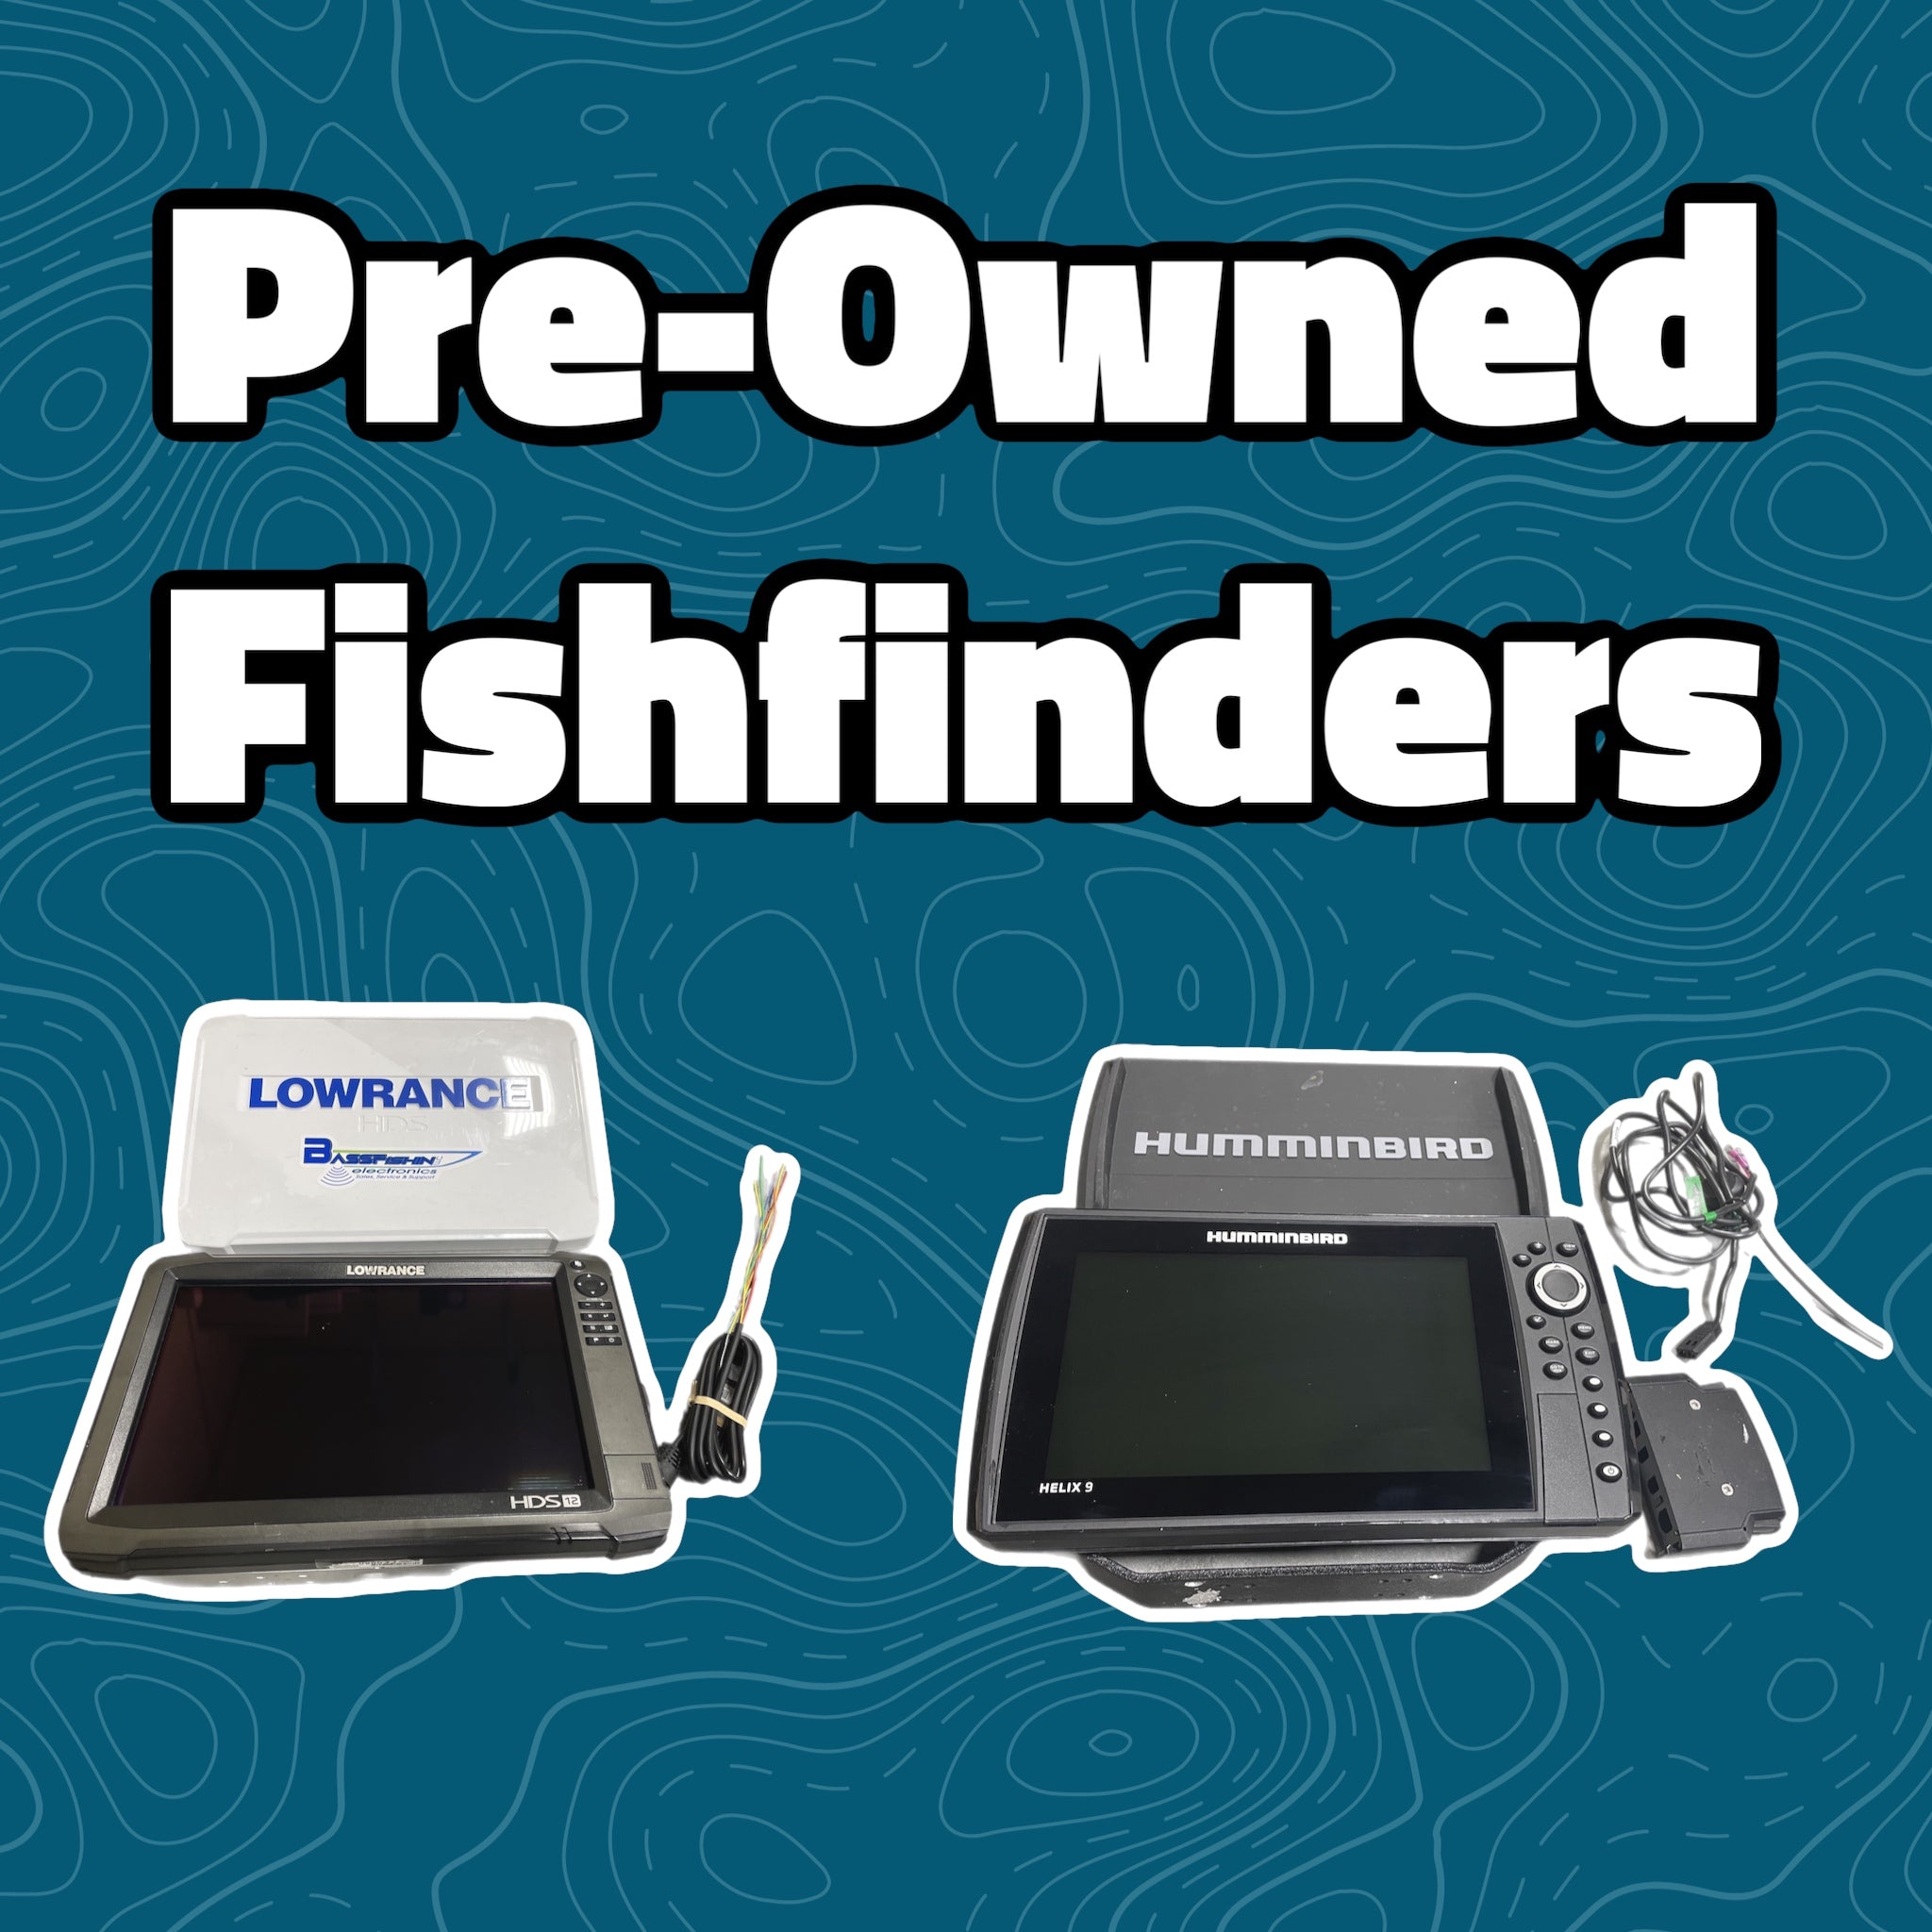 Fishfinders